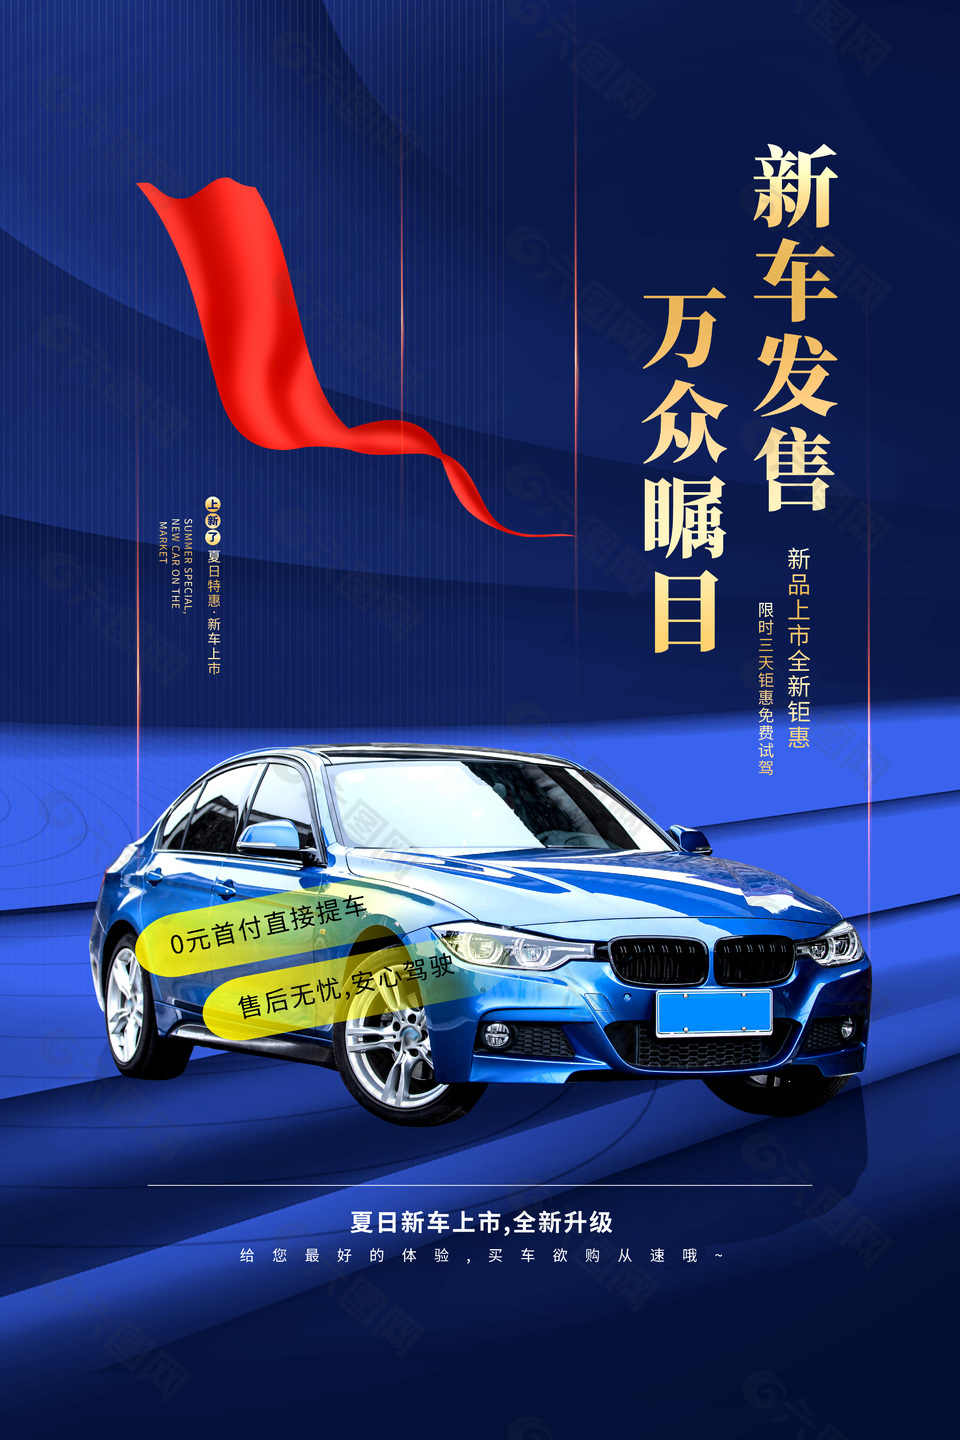 夏日特惠新车上市发售活动推广蓝色海报